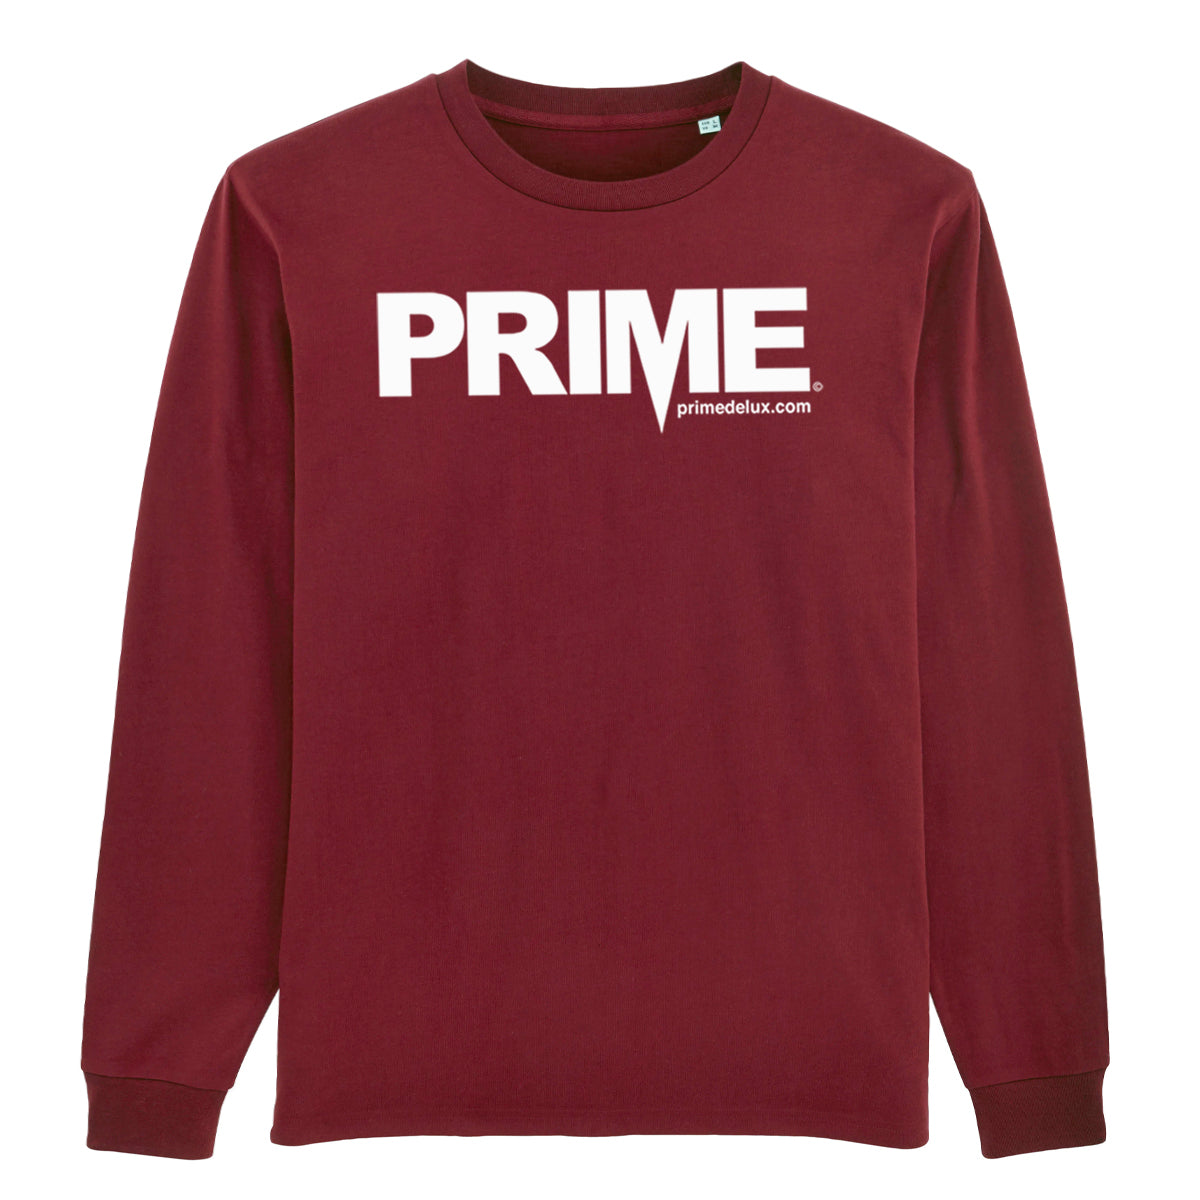 Prime Delux OG Logo Long Sleeve T Shirt - Maroon / White - Prime Delux Store